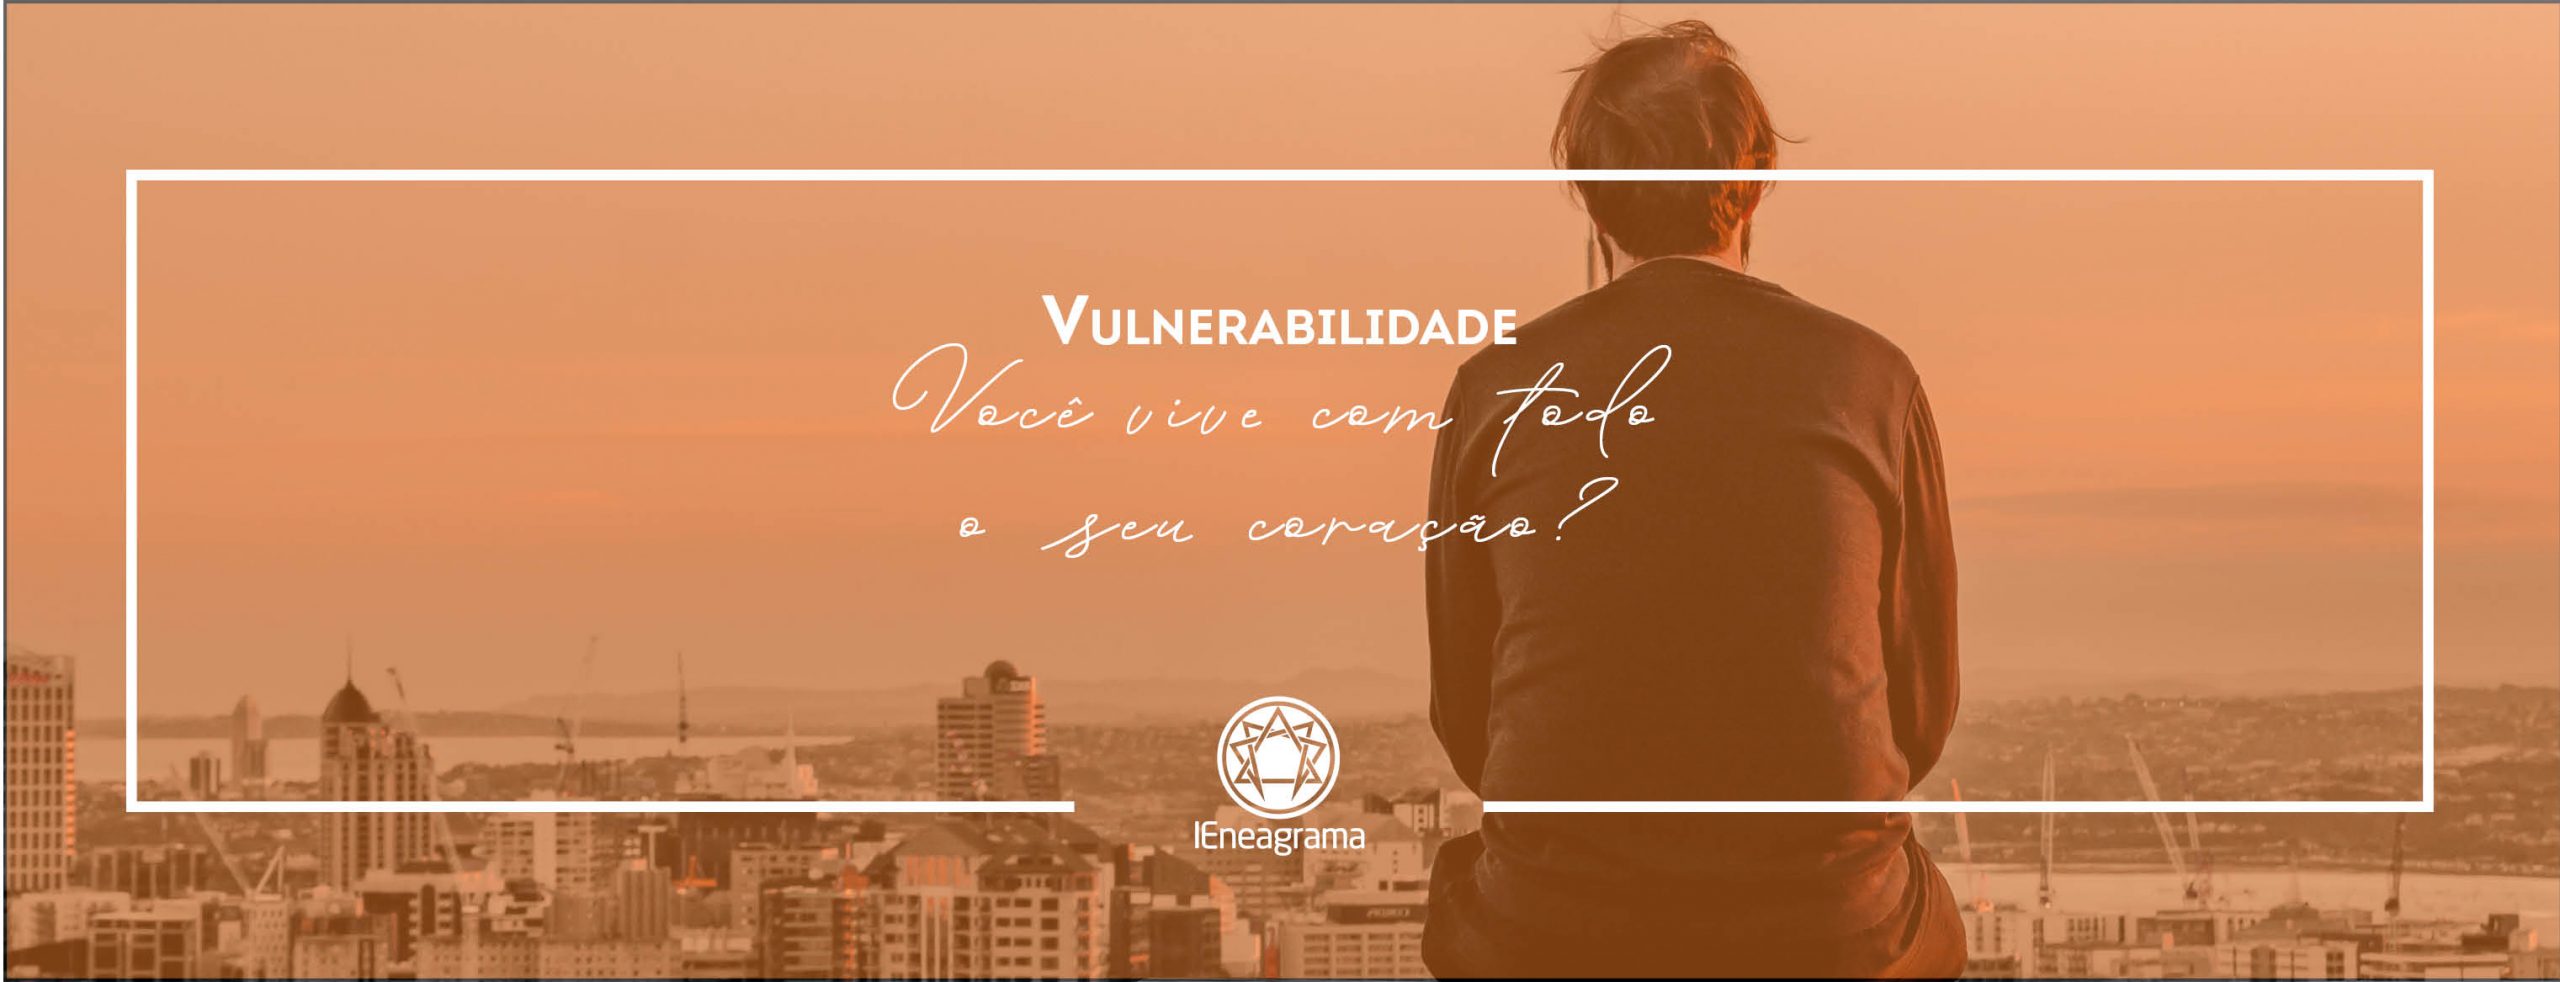 Vulnerabilidade: Você vive com todo o seu coração?